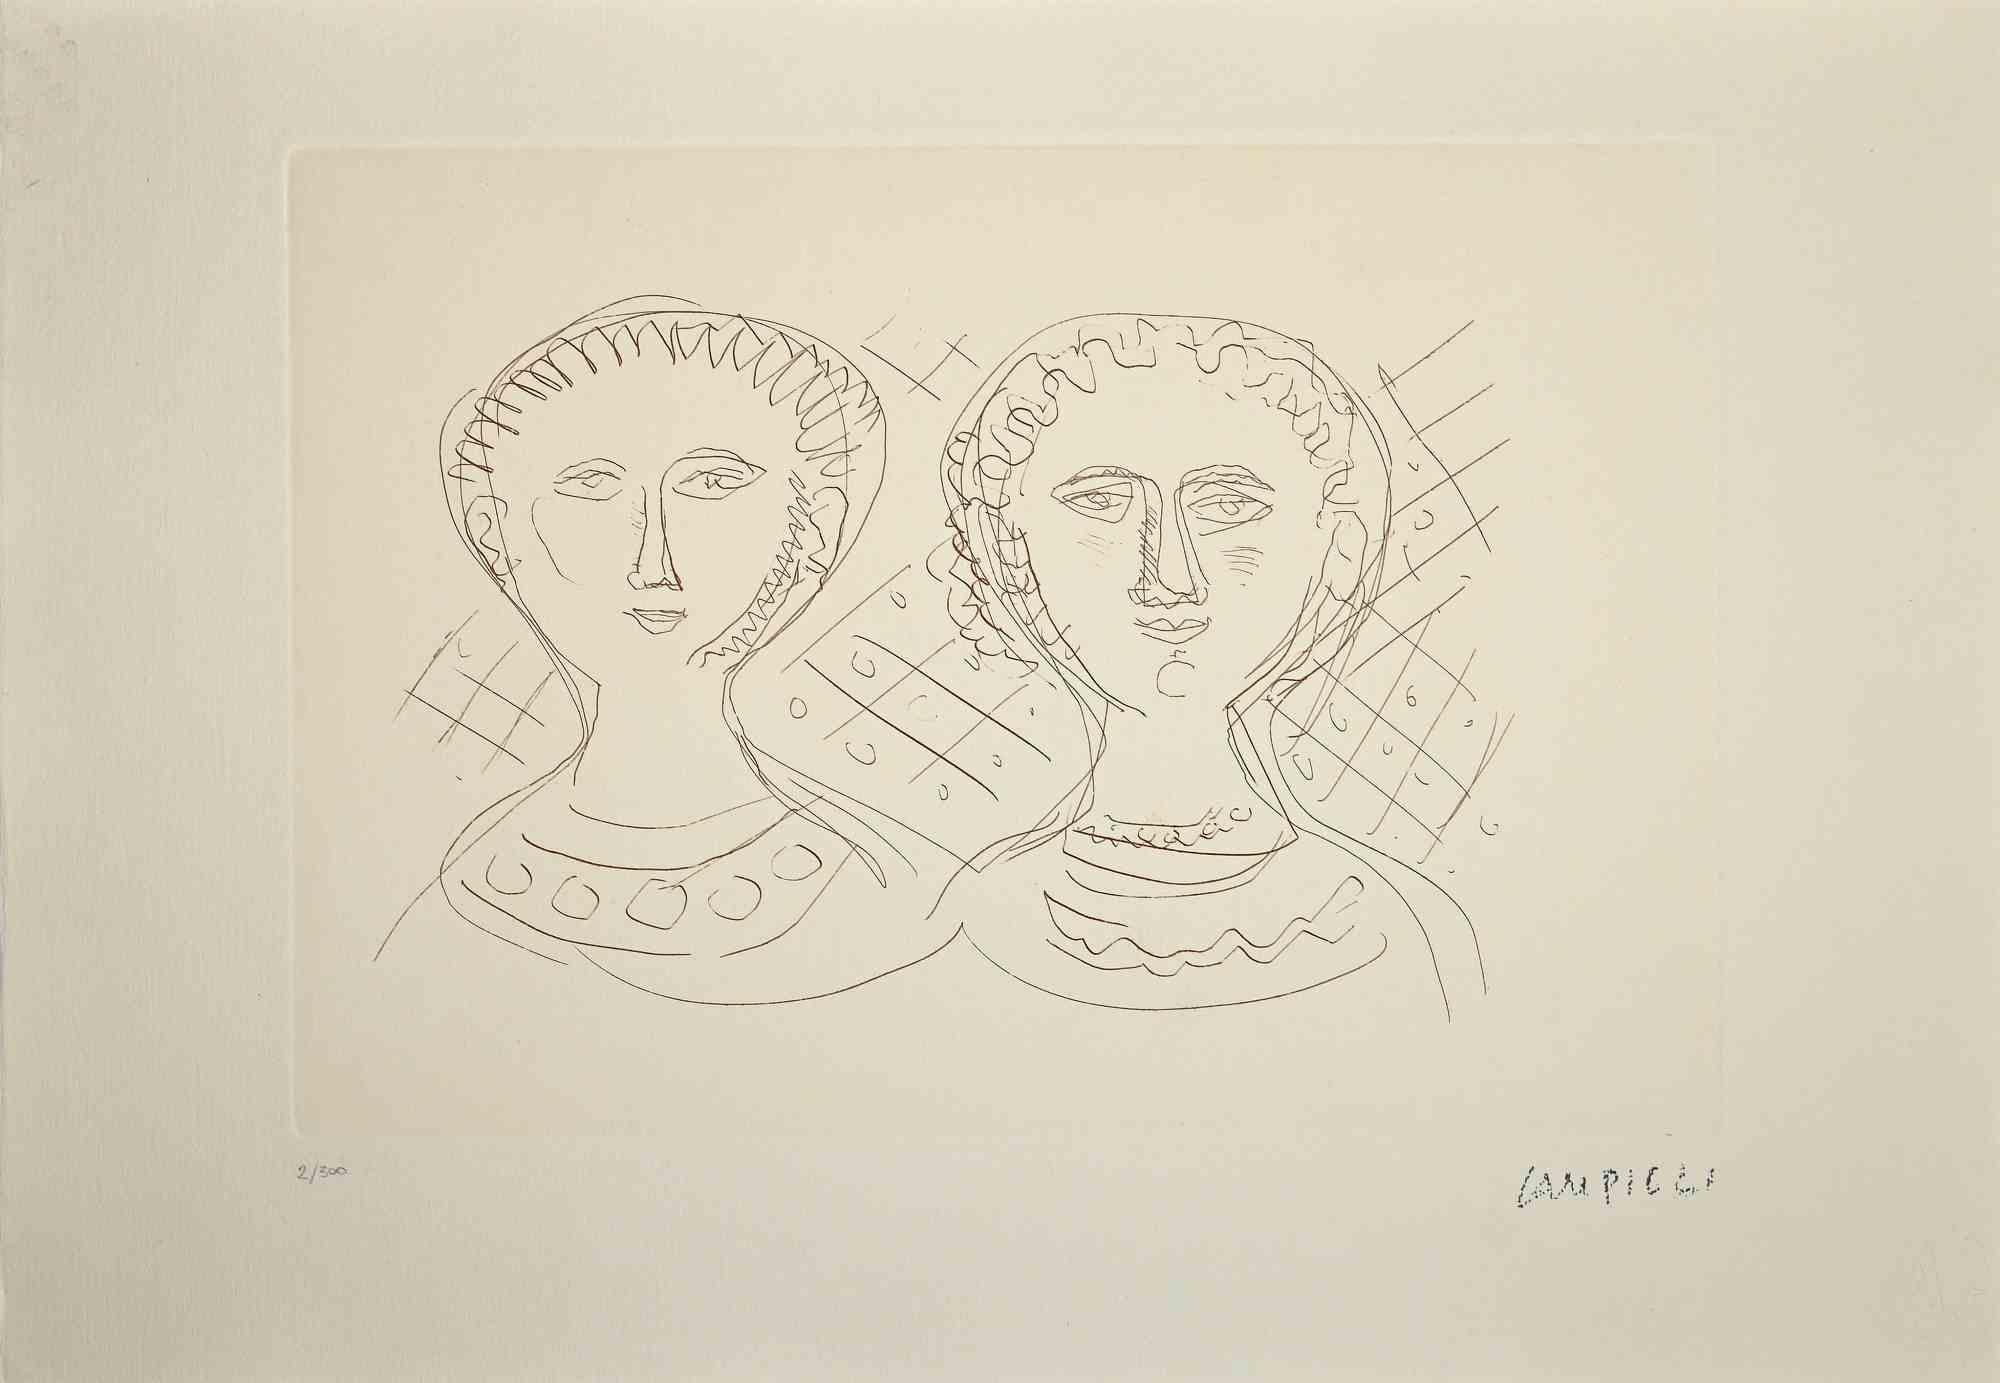 Les deux femmes est un tirage original réalisé par Massimo Campigli dans les années 1970/1971.

Gravure sur papier.

Cette œuvre fait partie d'une série d'œuvres créées dans la dernière période de l'artiste et imprimées au tournant de l'année de sa